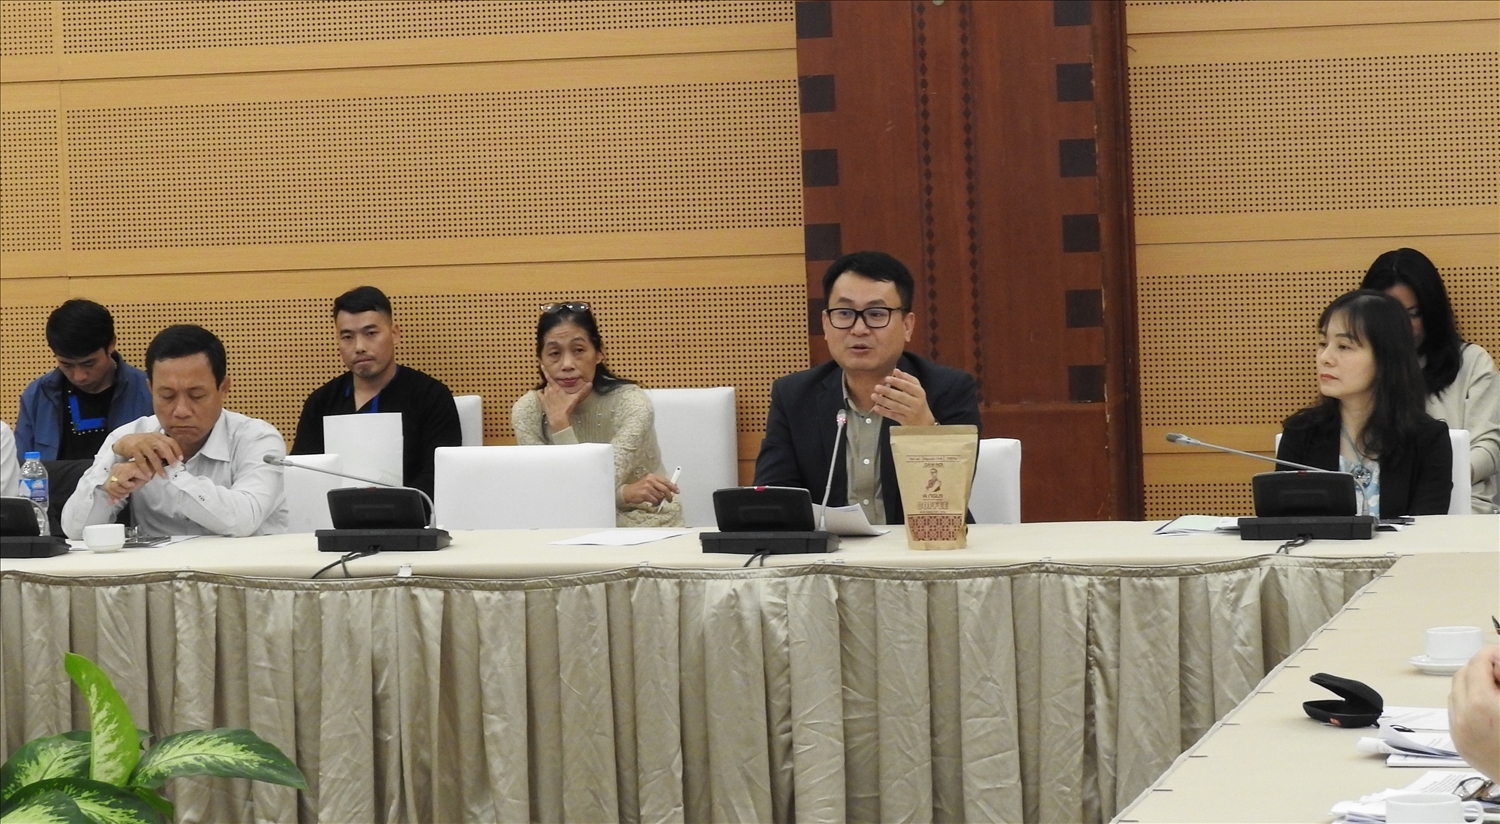 Ông Hà Việt Quân, Chánh Văn phòng Chương trình MTQG 1719 trao đổi với các đại biểu tham dự Phiên họp kỹ thuật: “Hội thảo với các tổ chức quốc tế, đối tác phát triển để thông tin, chia sẻ và xây dựng kế hoạch hợp tác, huy động nguồn lực, thu hút đầu tư trong thực hiện Chương trình MTQG 1719 giai đoạn 2021 - 2023”